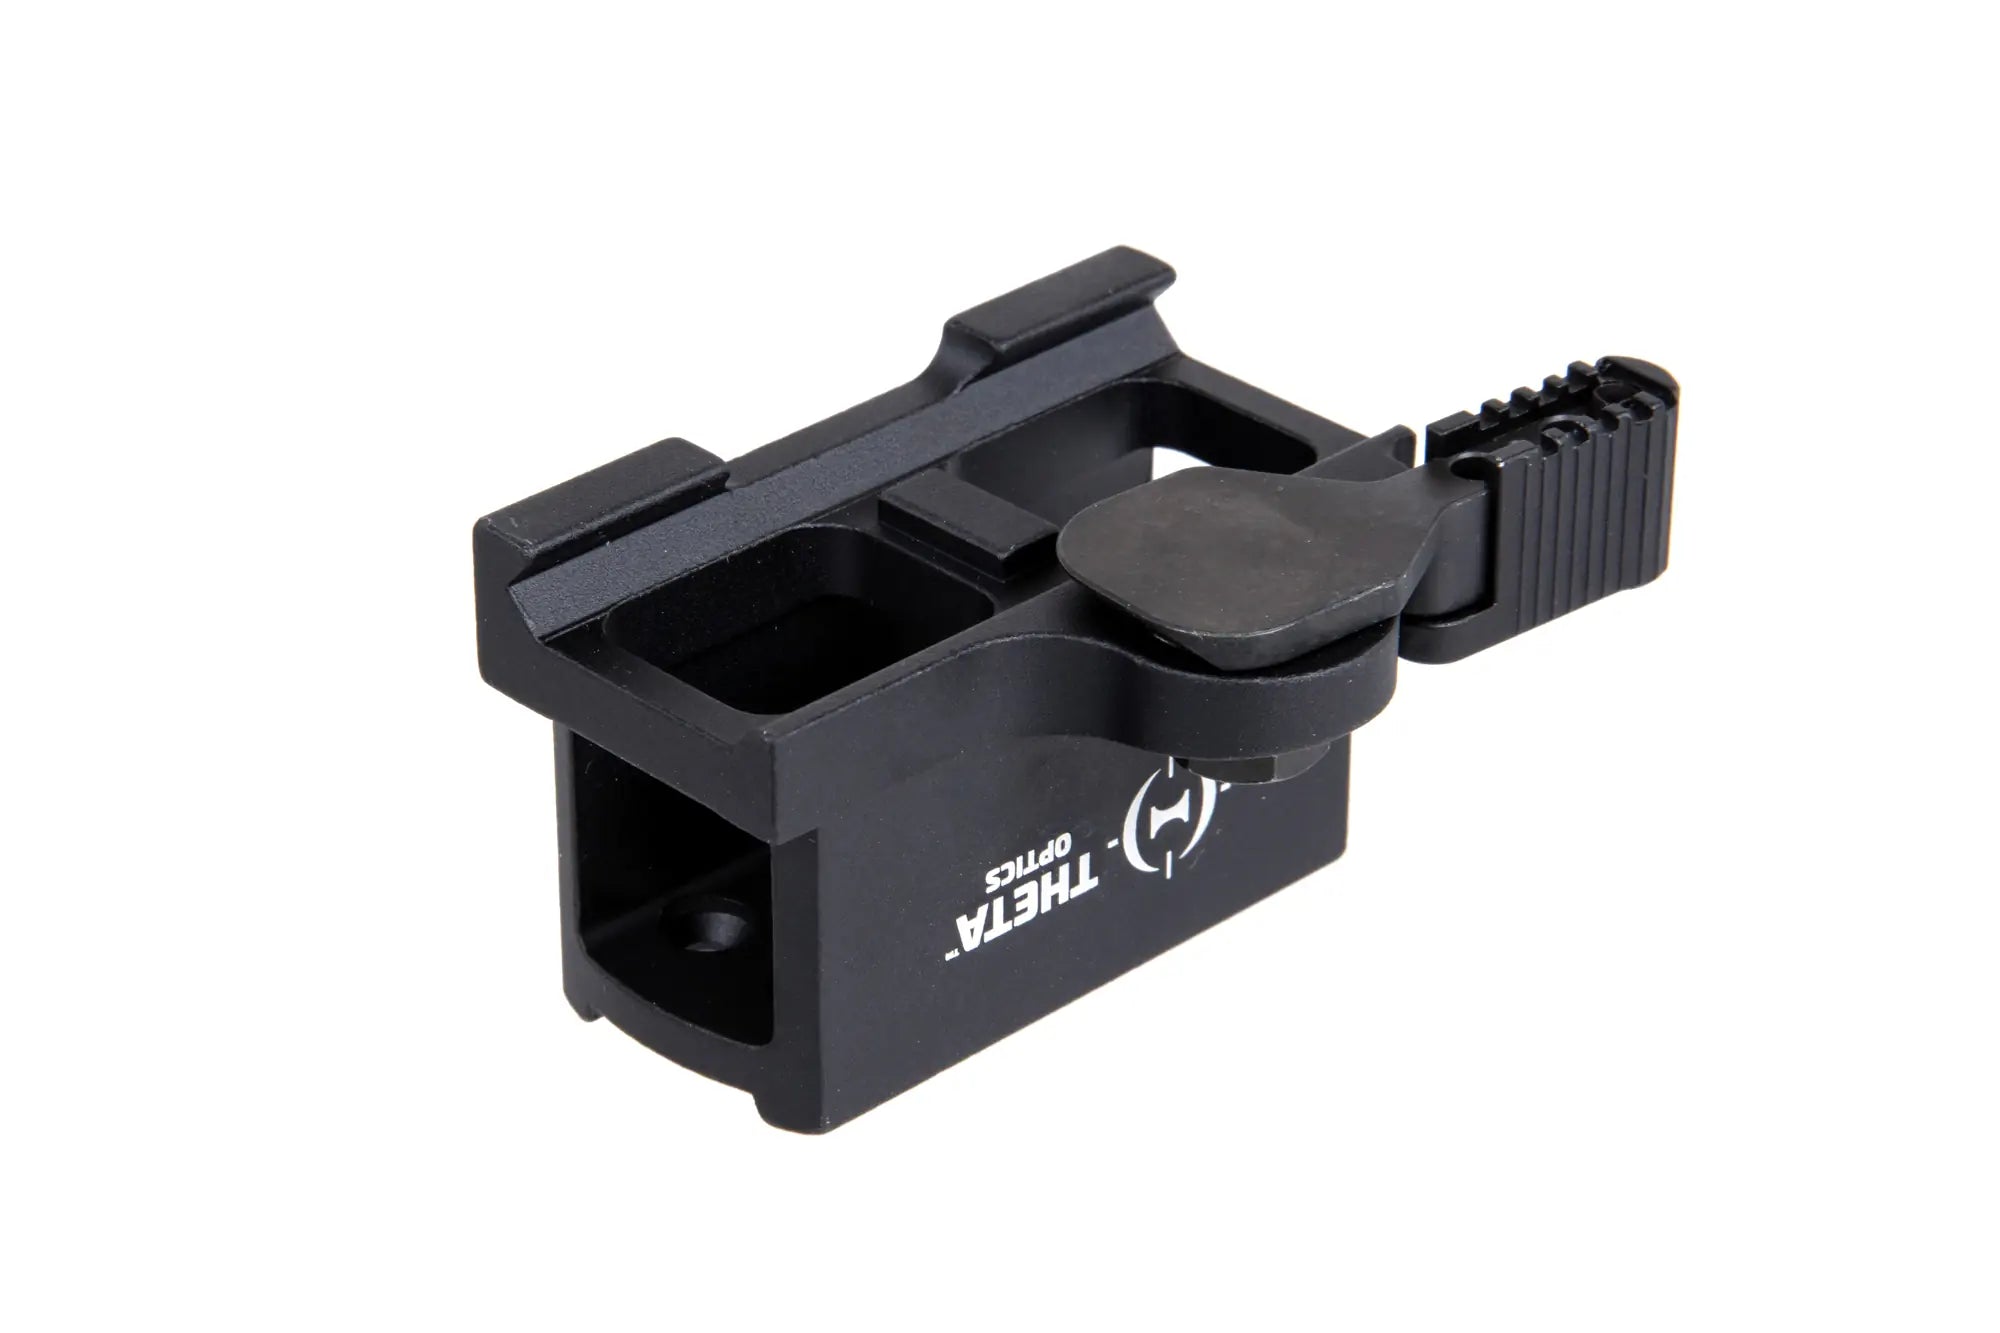 High QD mount for Theta Optics Compact collimators-3